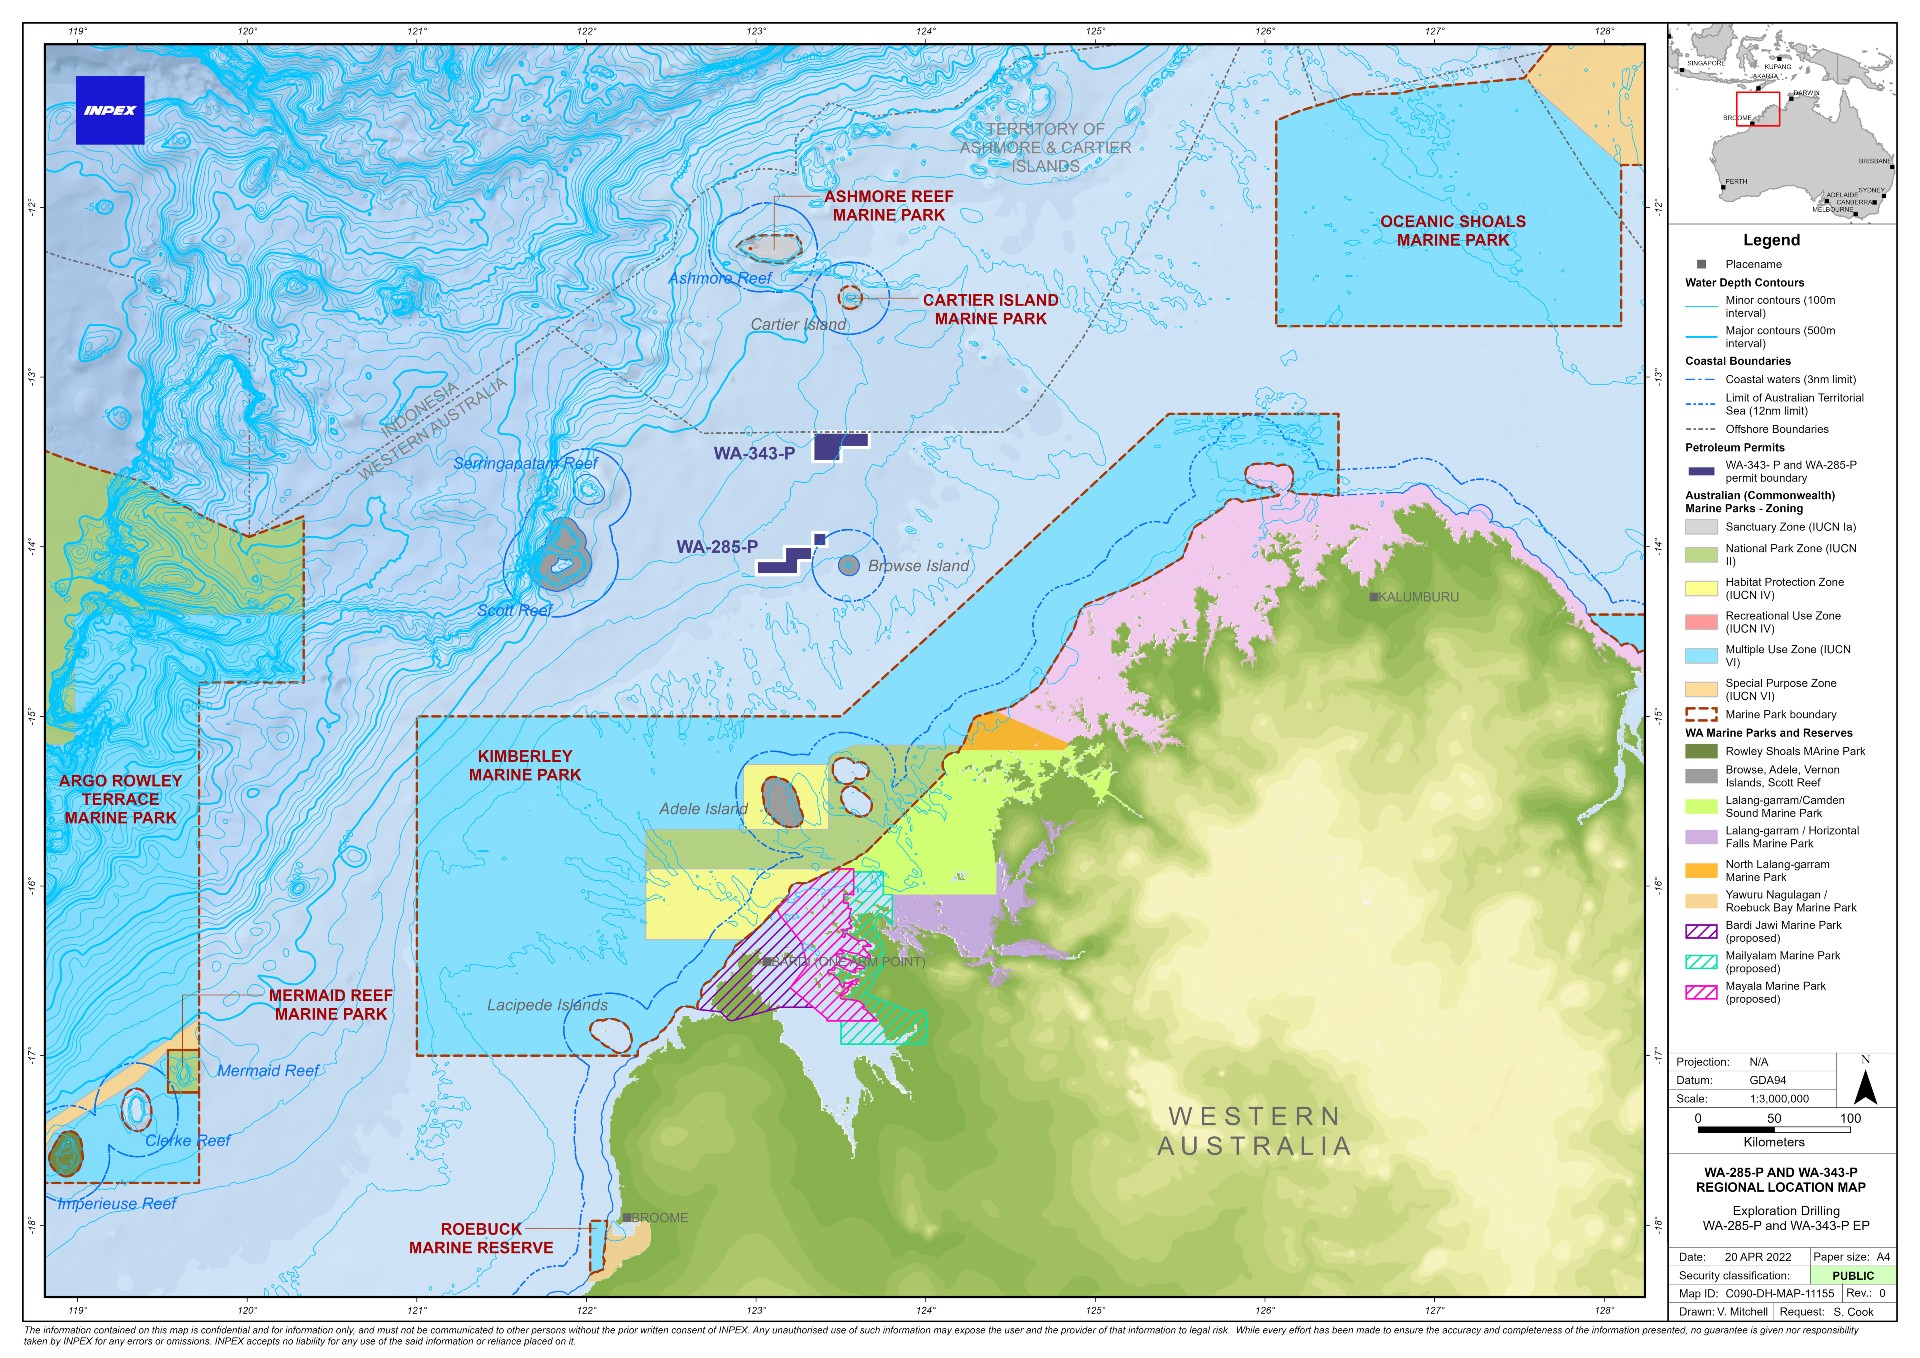 Location map - Activity: Exploration Drilling WA-285-P & WA-343-P (refer to description)